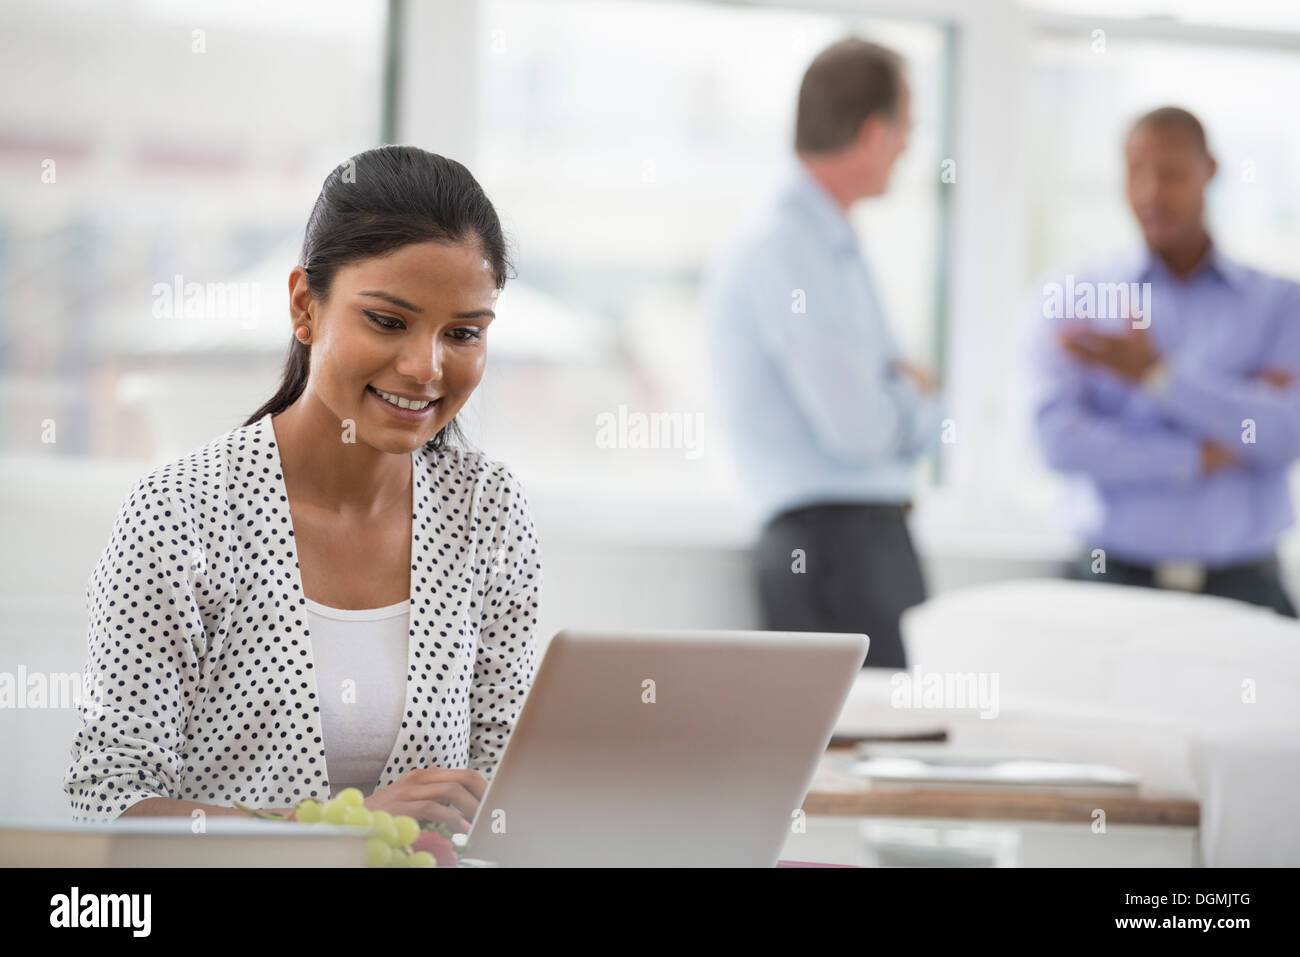 Vita in ufficio. Una donna seduta a una scrivania utilizzando un computer portatile. Due uomini in background. Foto Stock